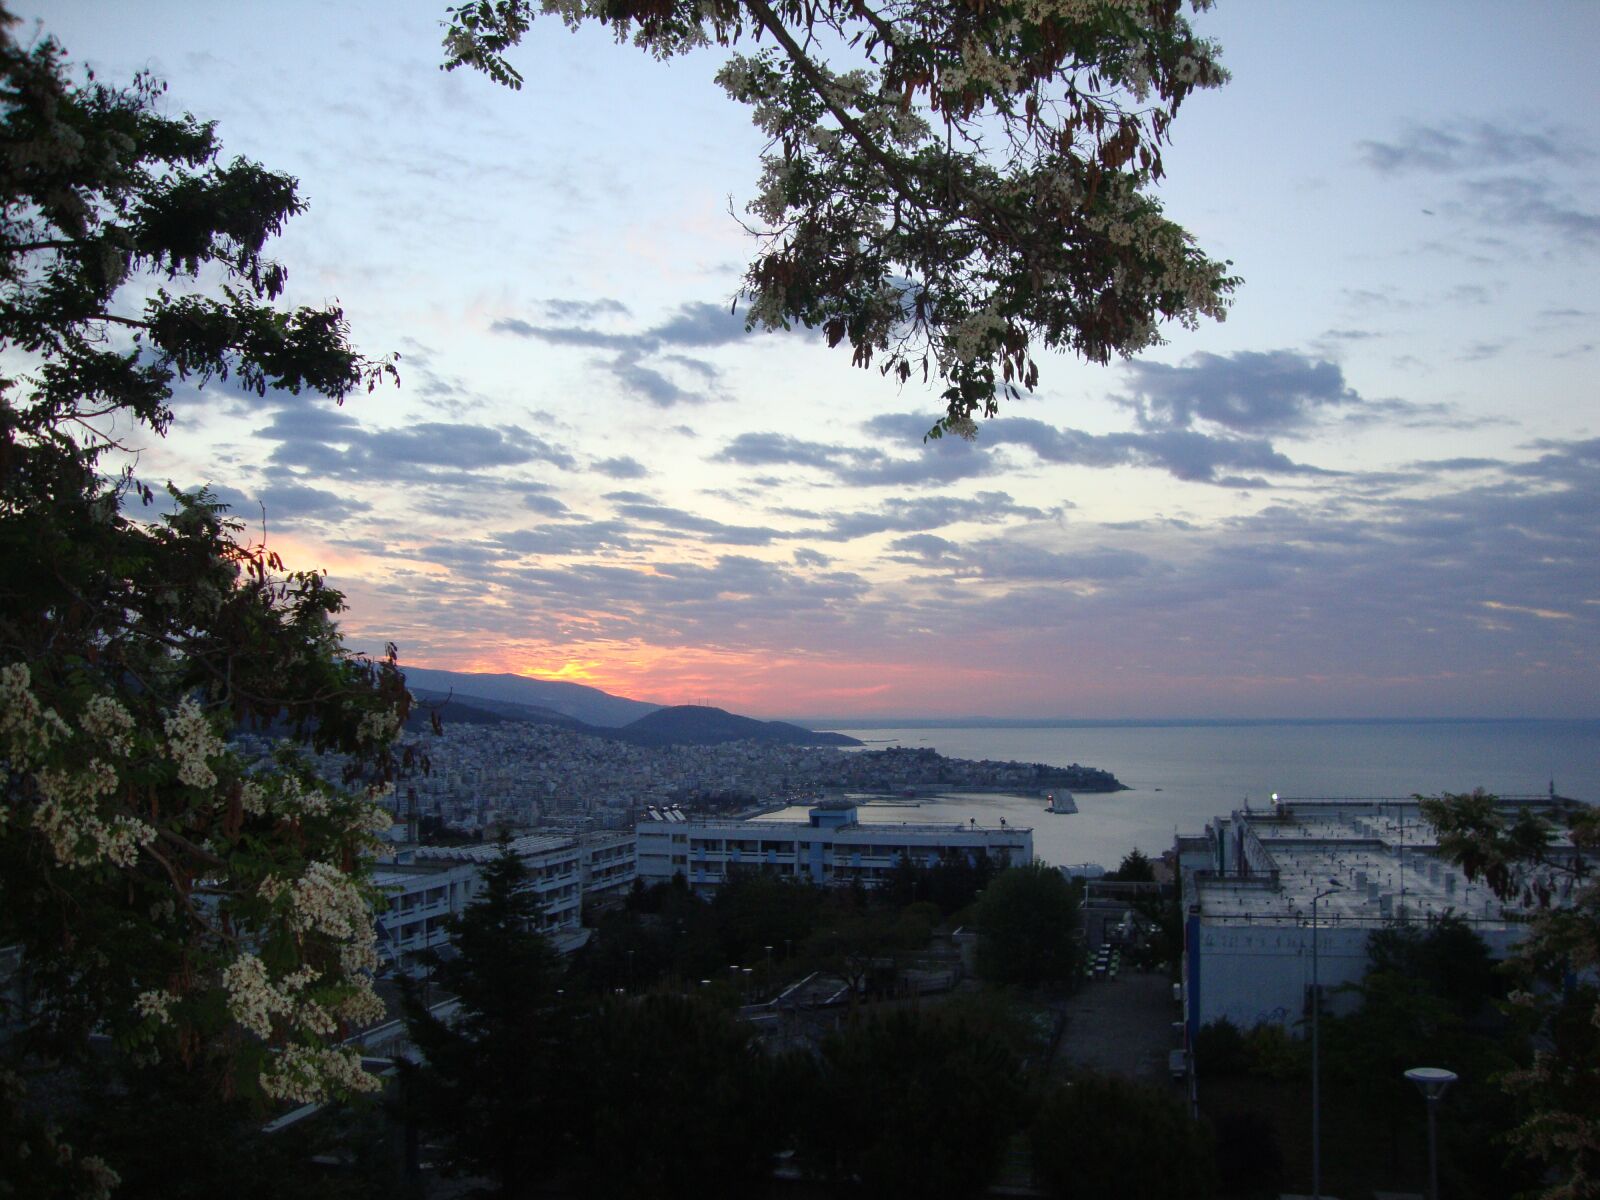 Sony Cyber-shot DSC-W220 sample photo. Greece, kavala, sunset photography